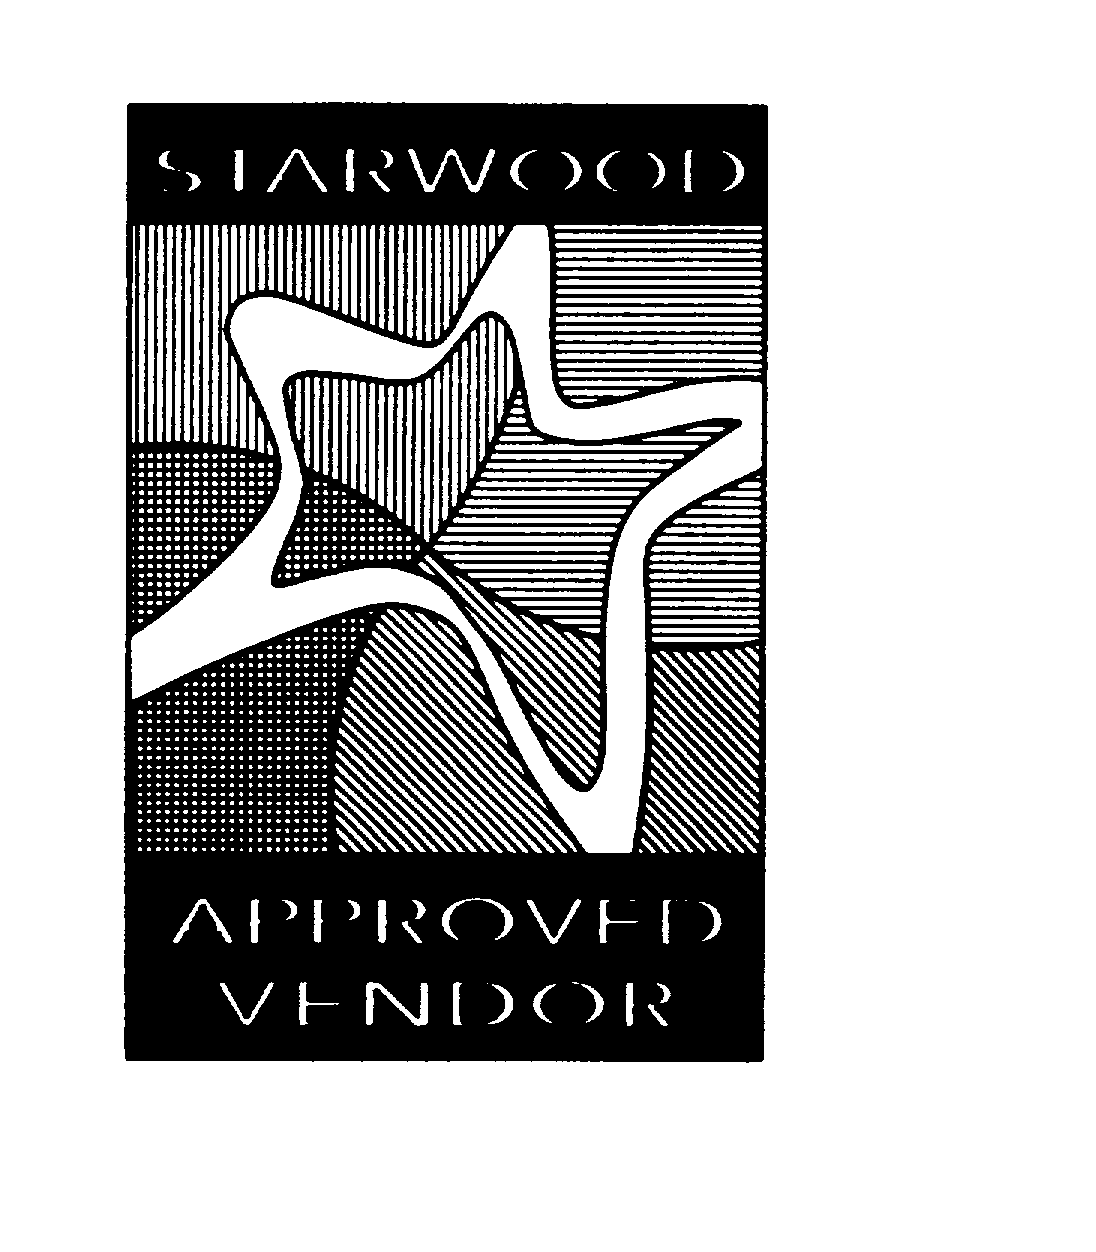  STARWOOD APPROVED VENDOR